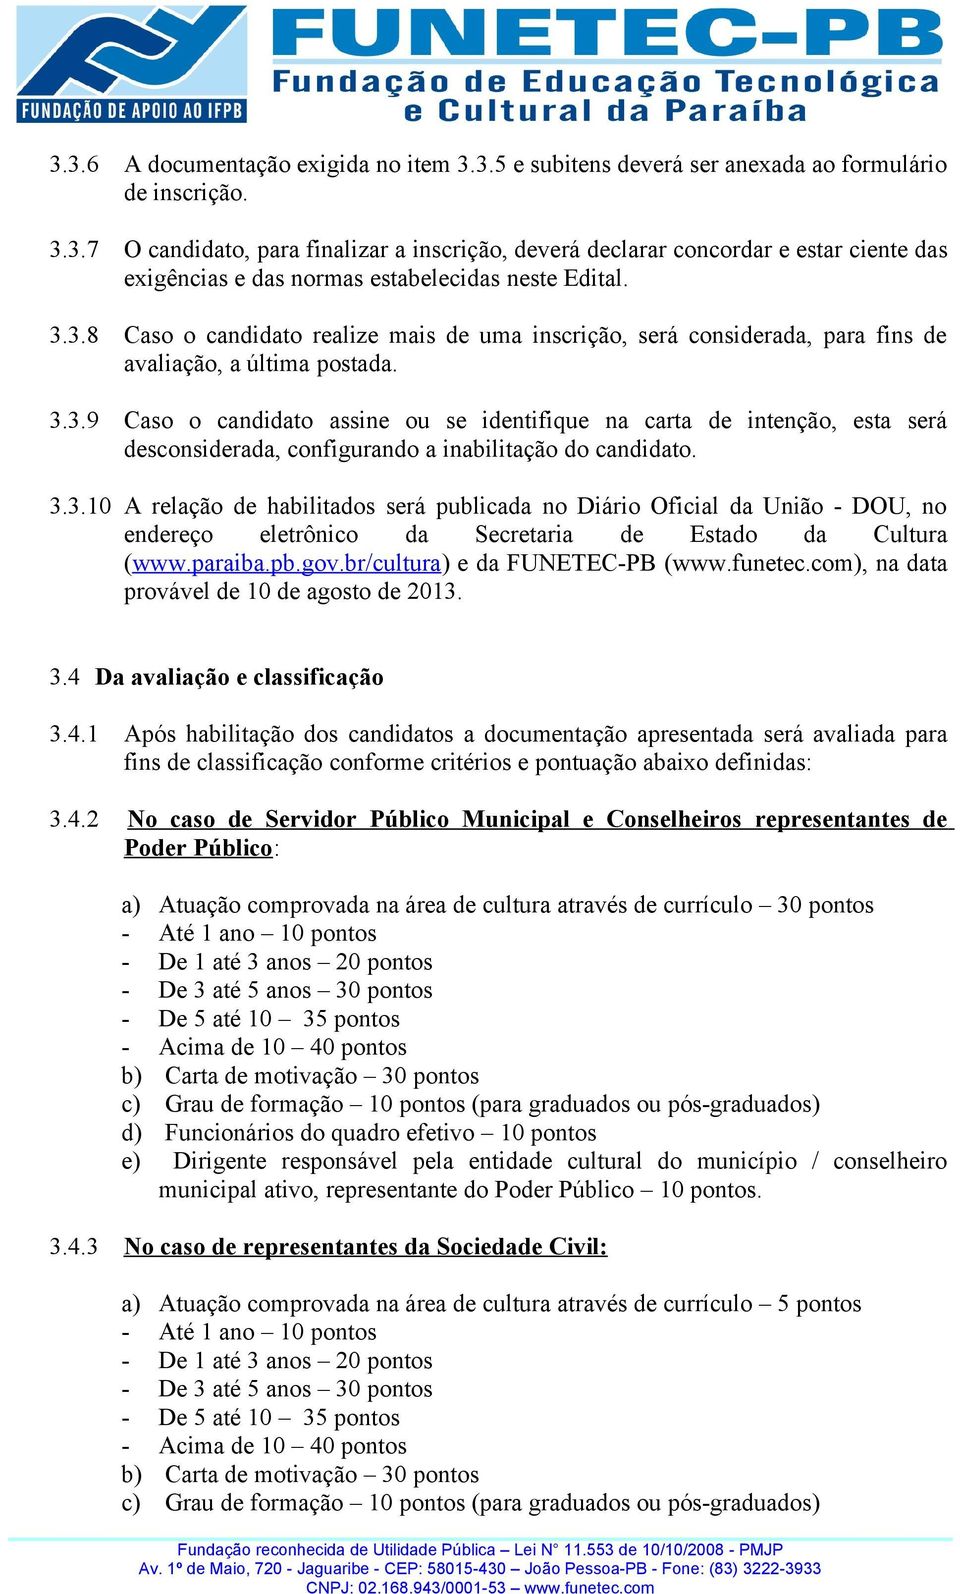 3.3.10 A relação de habilitados será publicada no Diário Oficial da União - DOU, no endereço eletrônico da Secretaria de Estado da Cultura (www.paraiba.pb.gov.br/cultura) e da FUNETEC-PB (www.funetec.